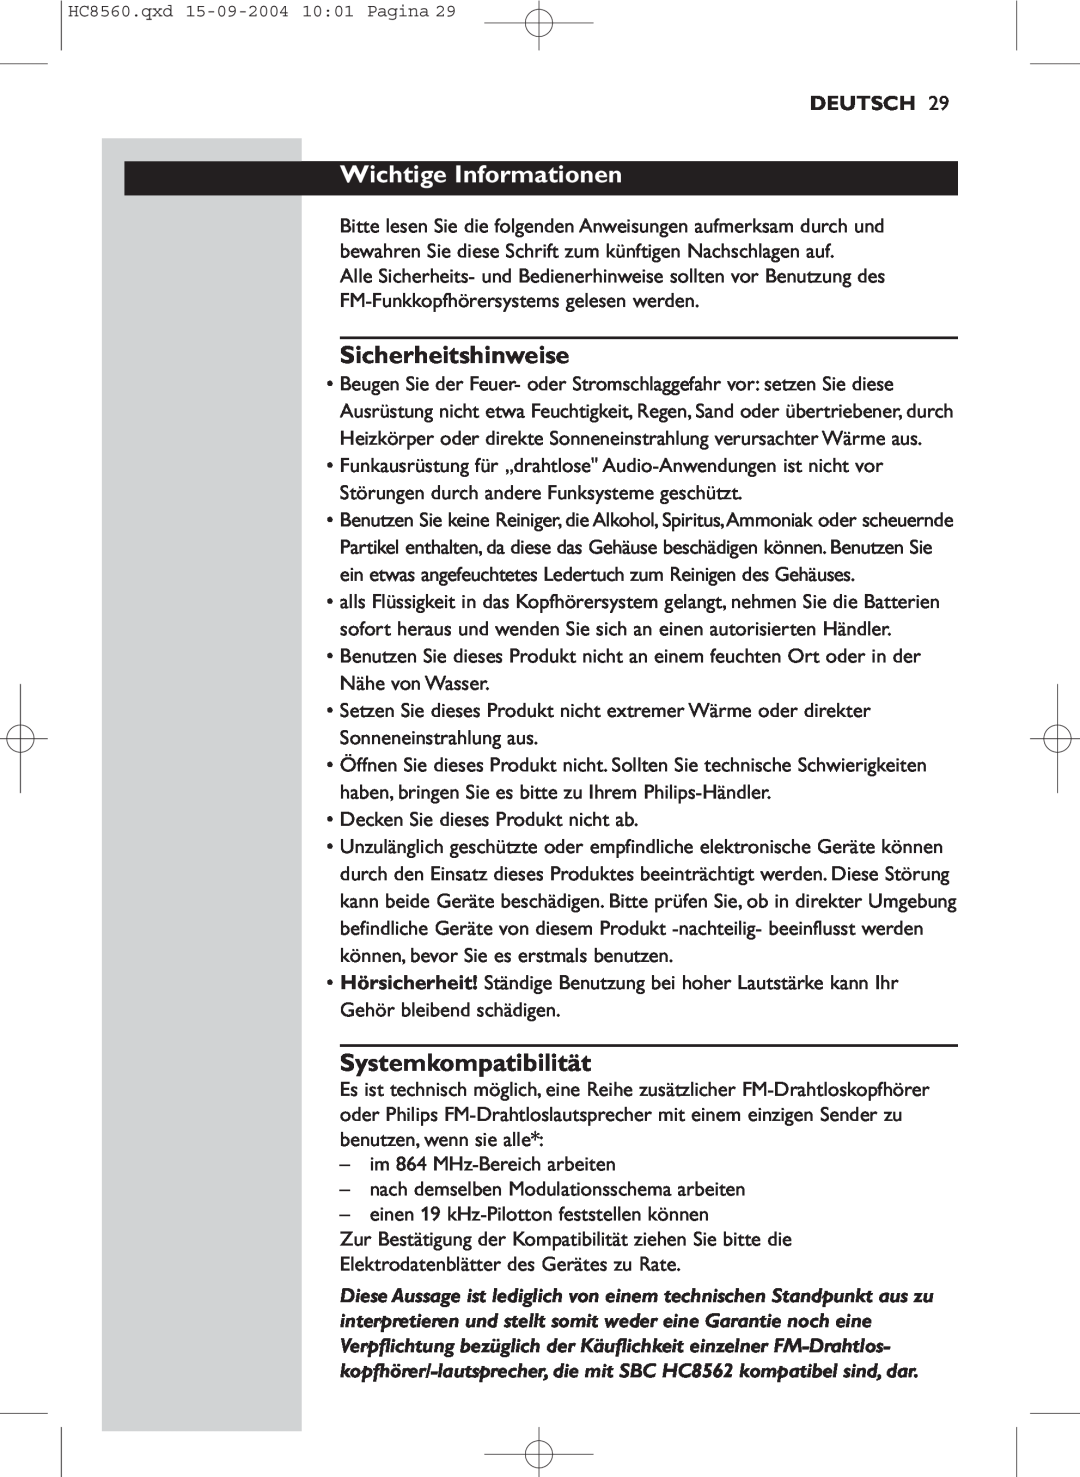 Philips HC 8560 manual Wichtige Informationen, Sicherheitshinweise, Systemkompatibilität, Deutsch 